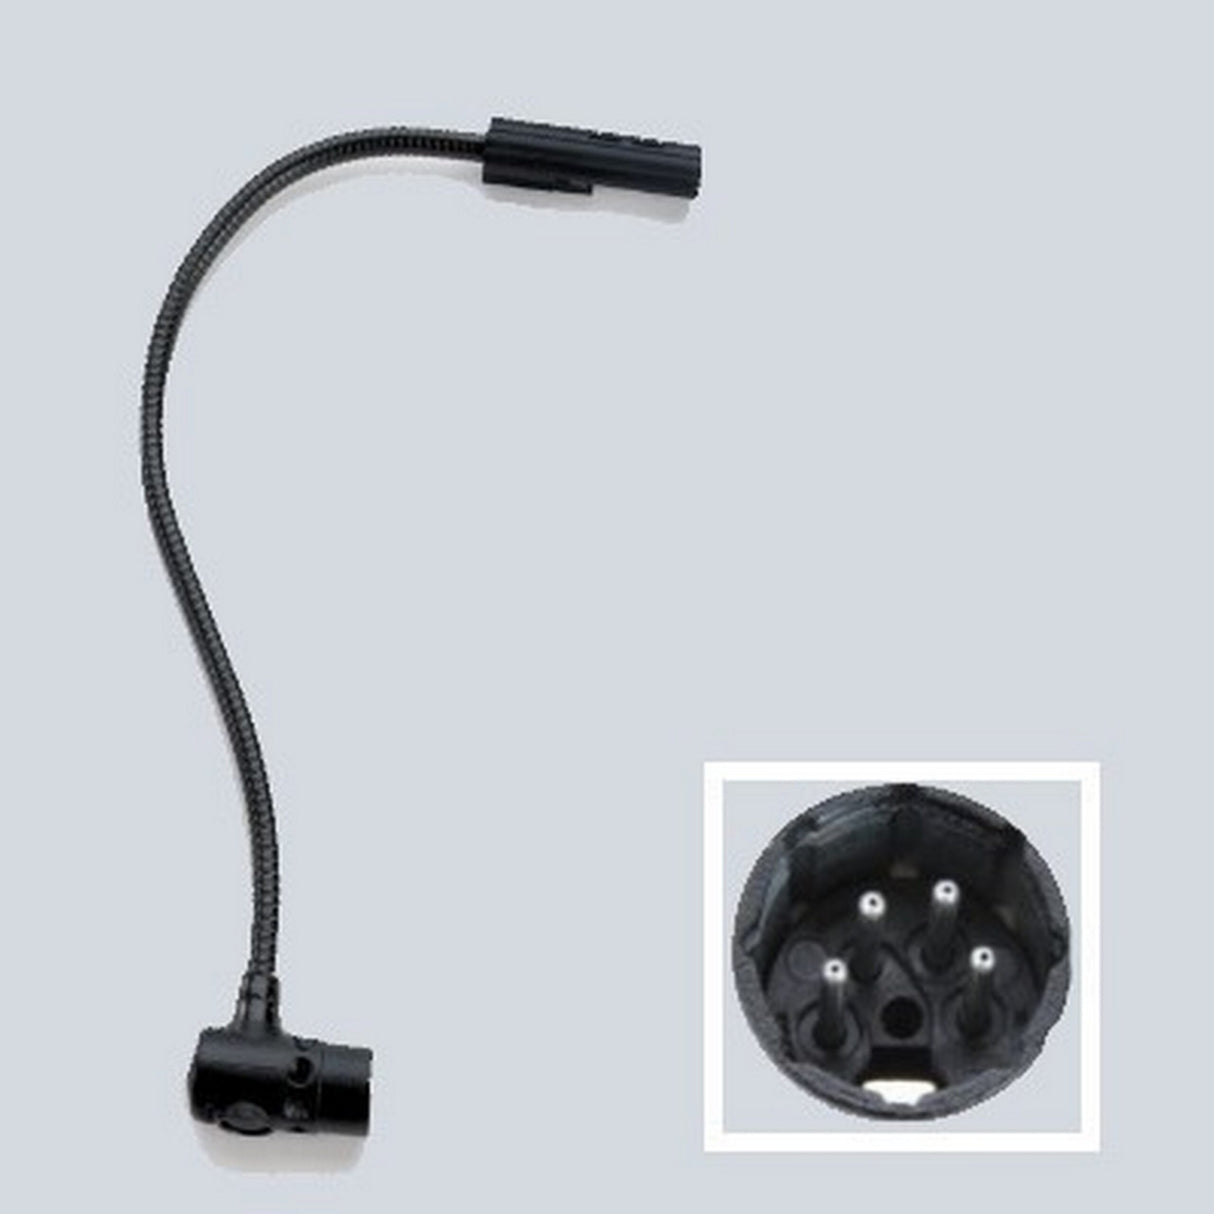 Littlite 24XR-4-LED 24-Inch Gooseneck Task LED Light, 4-Pin Right-Angle XLR Connector